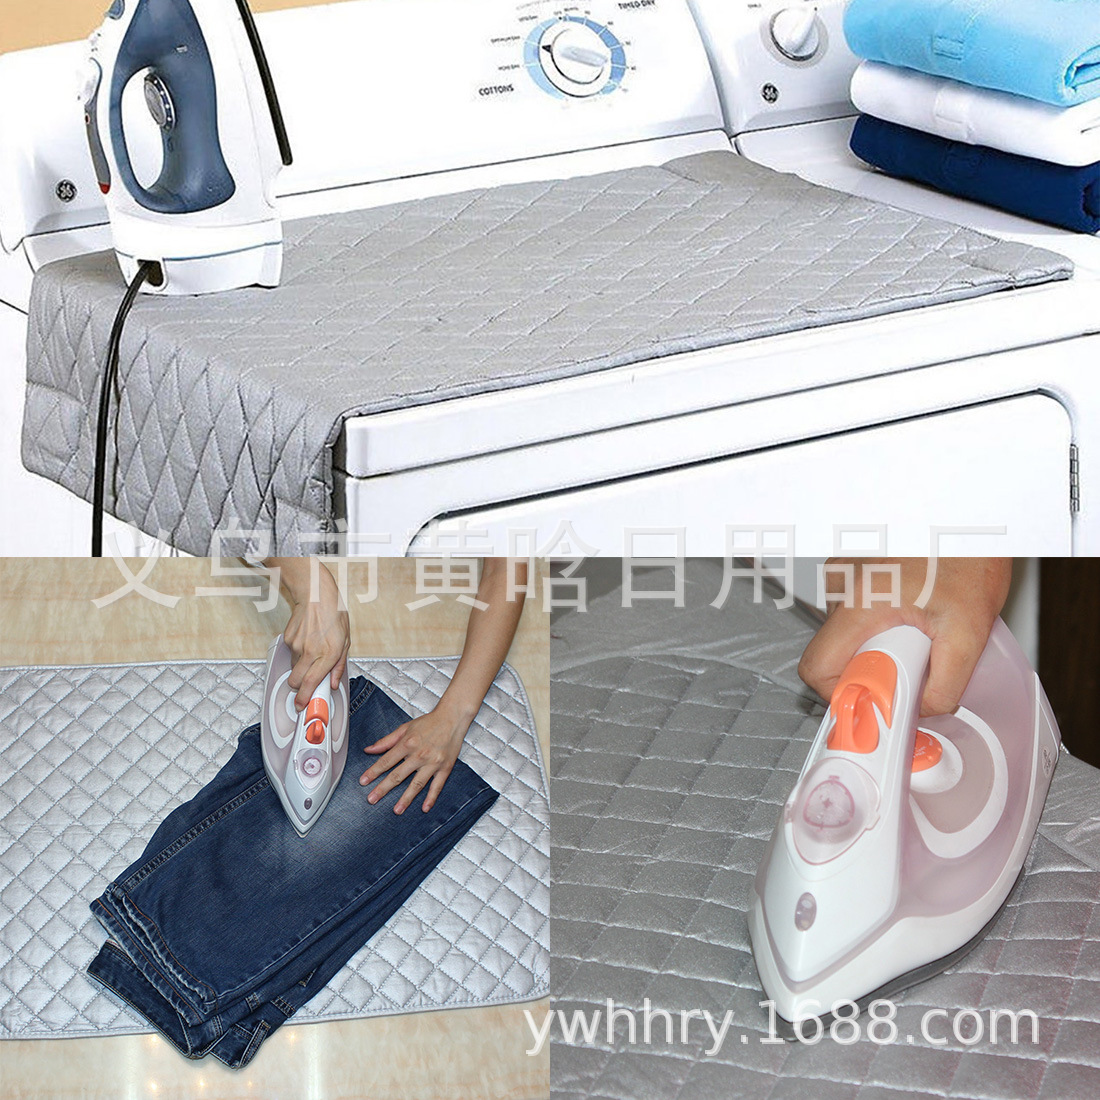 义乌市场30年老店耐高温烫衣垫涂银带磁性 熨衣垫 可折叠水洗